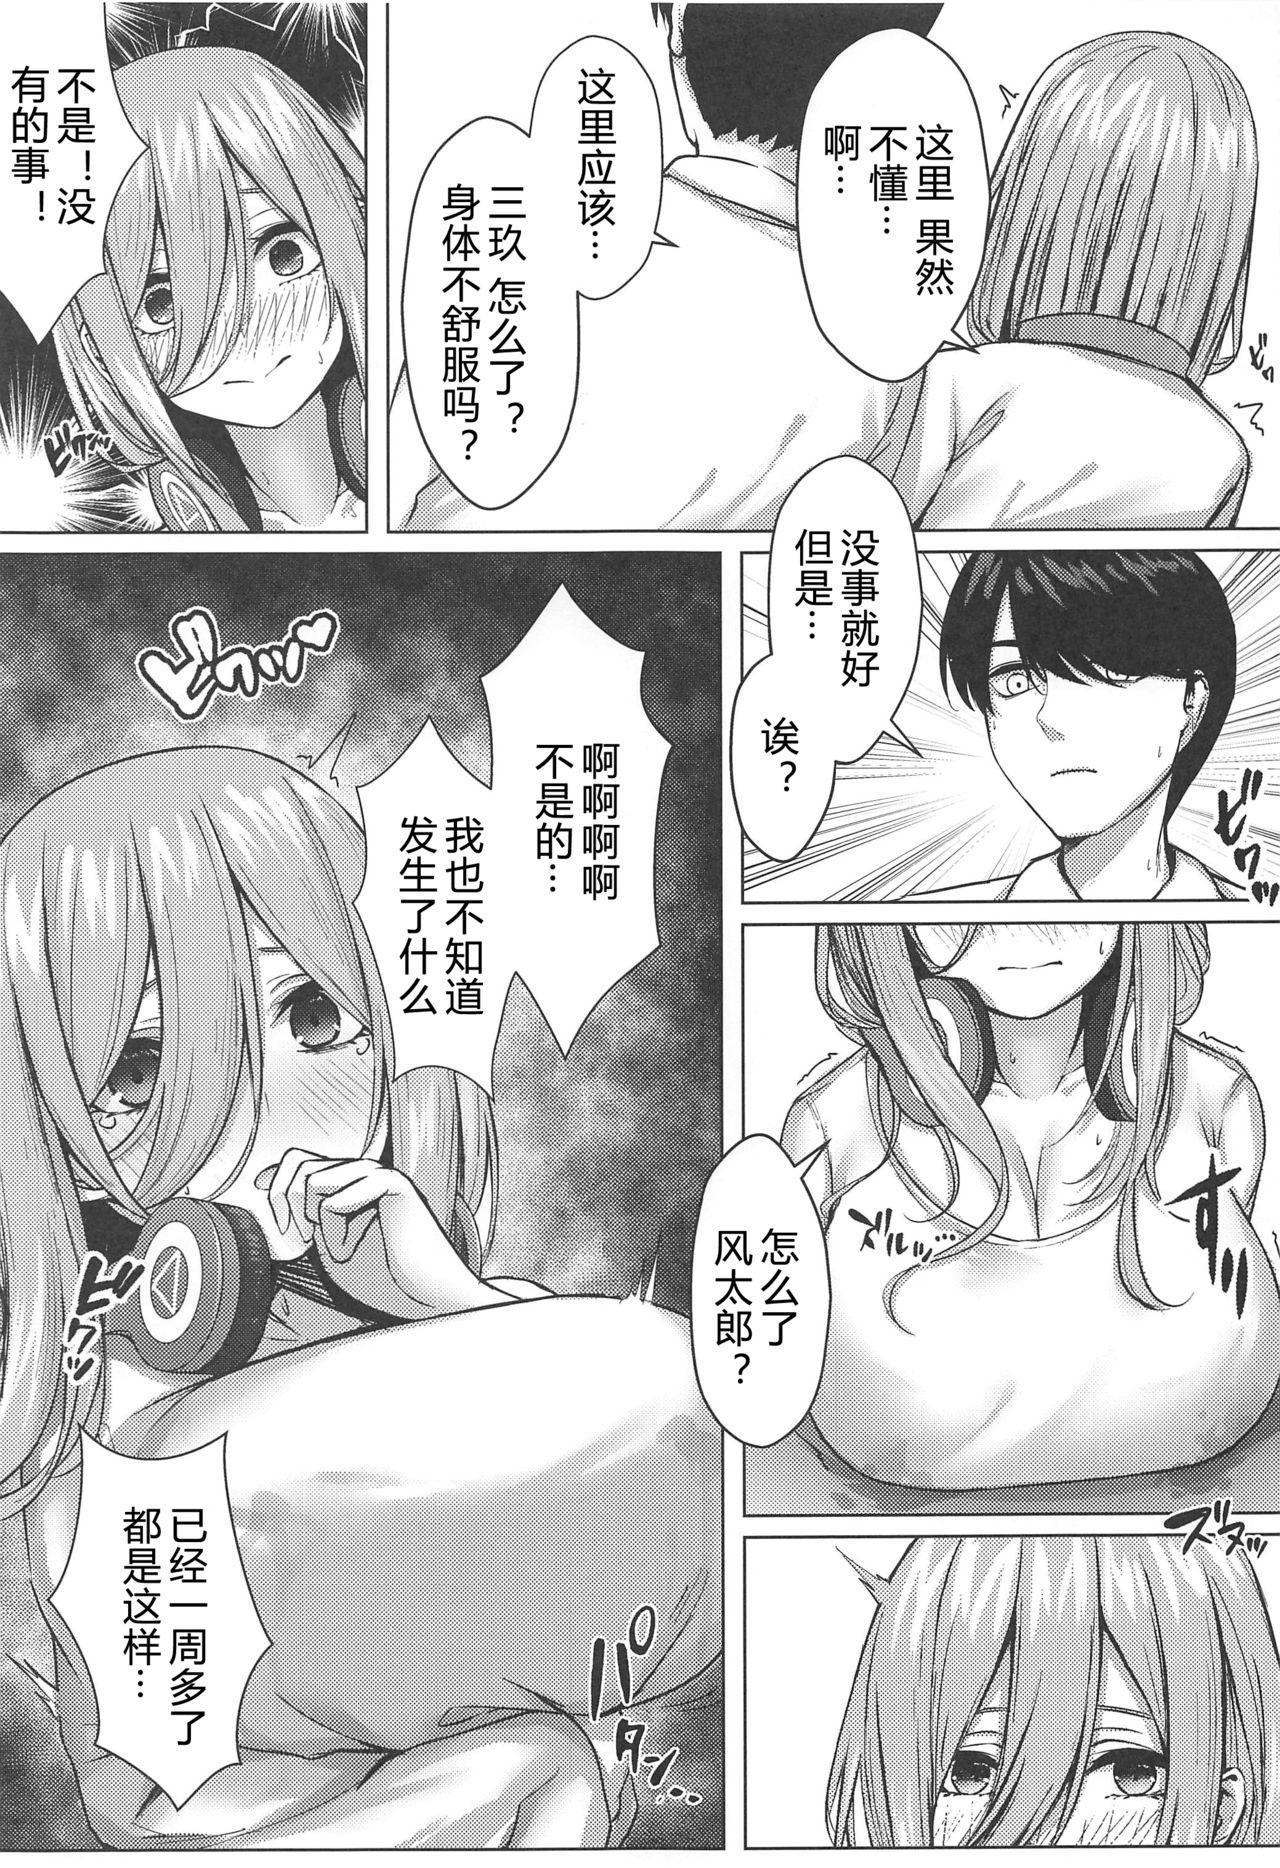 Sex Party Kouhei ni Ikou ze!! - Gotoubun no hanayome Boyfriend - Page 8